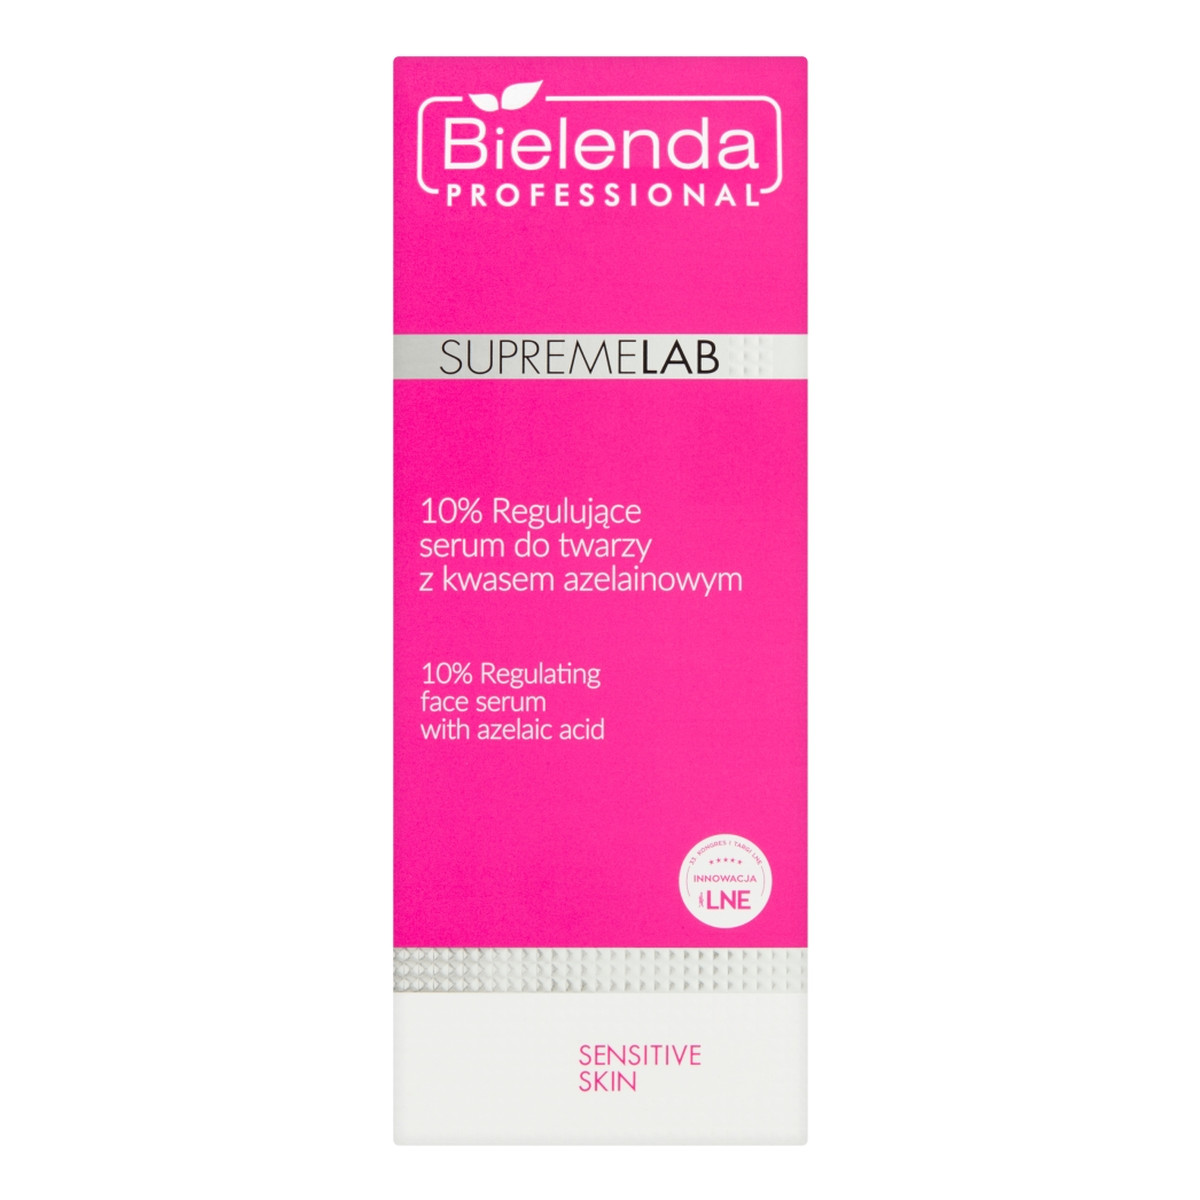 Bielenda Professional SUPREMELAB sensitive skin 10% regulujące serum do twarzy z kwasem azelainowym 50ml